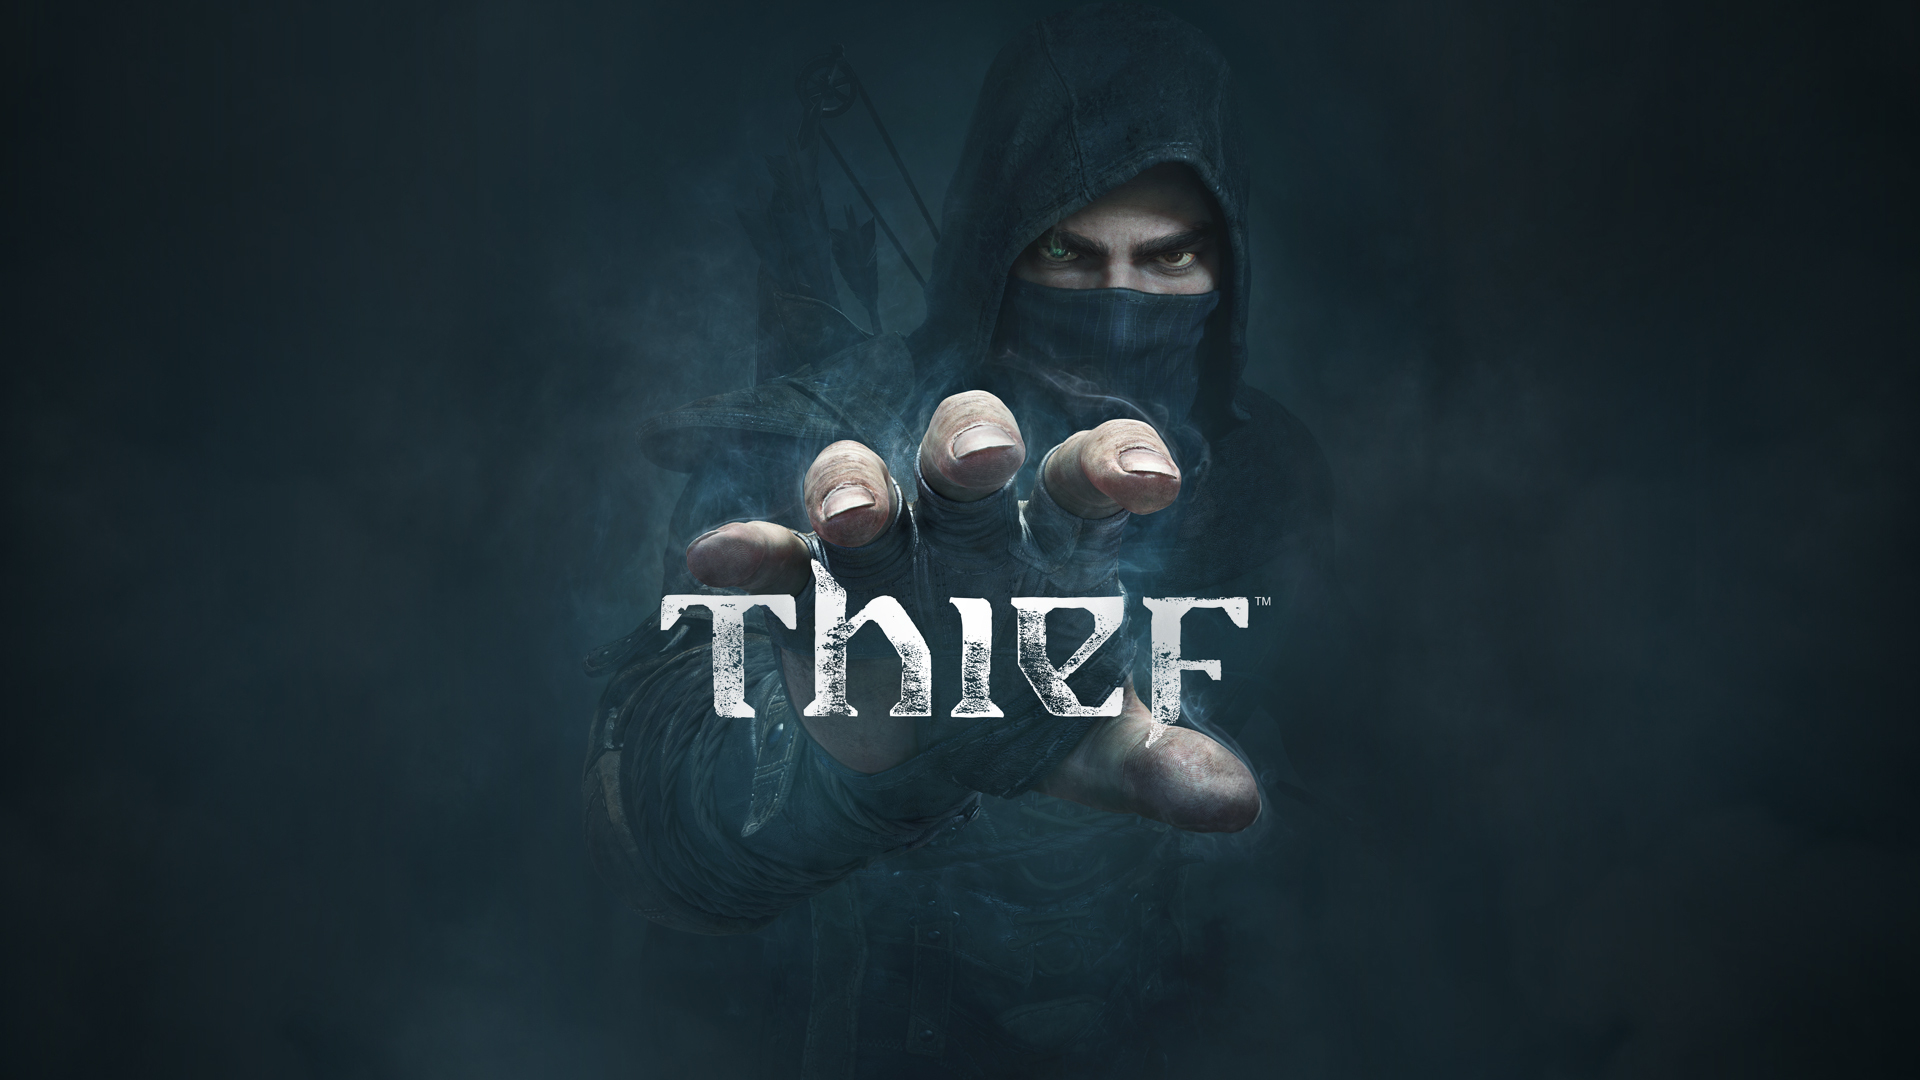 Новость В Steampay скидка 83% на приключенческий экшен Thief